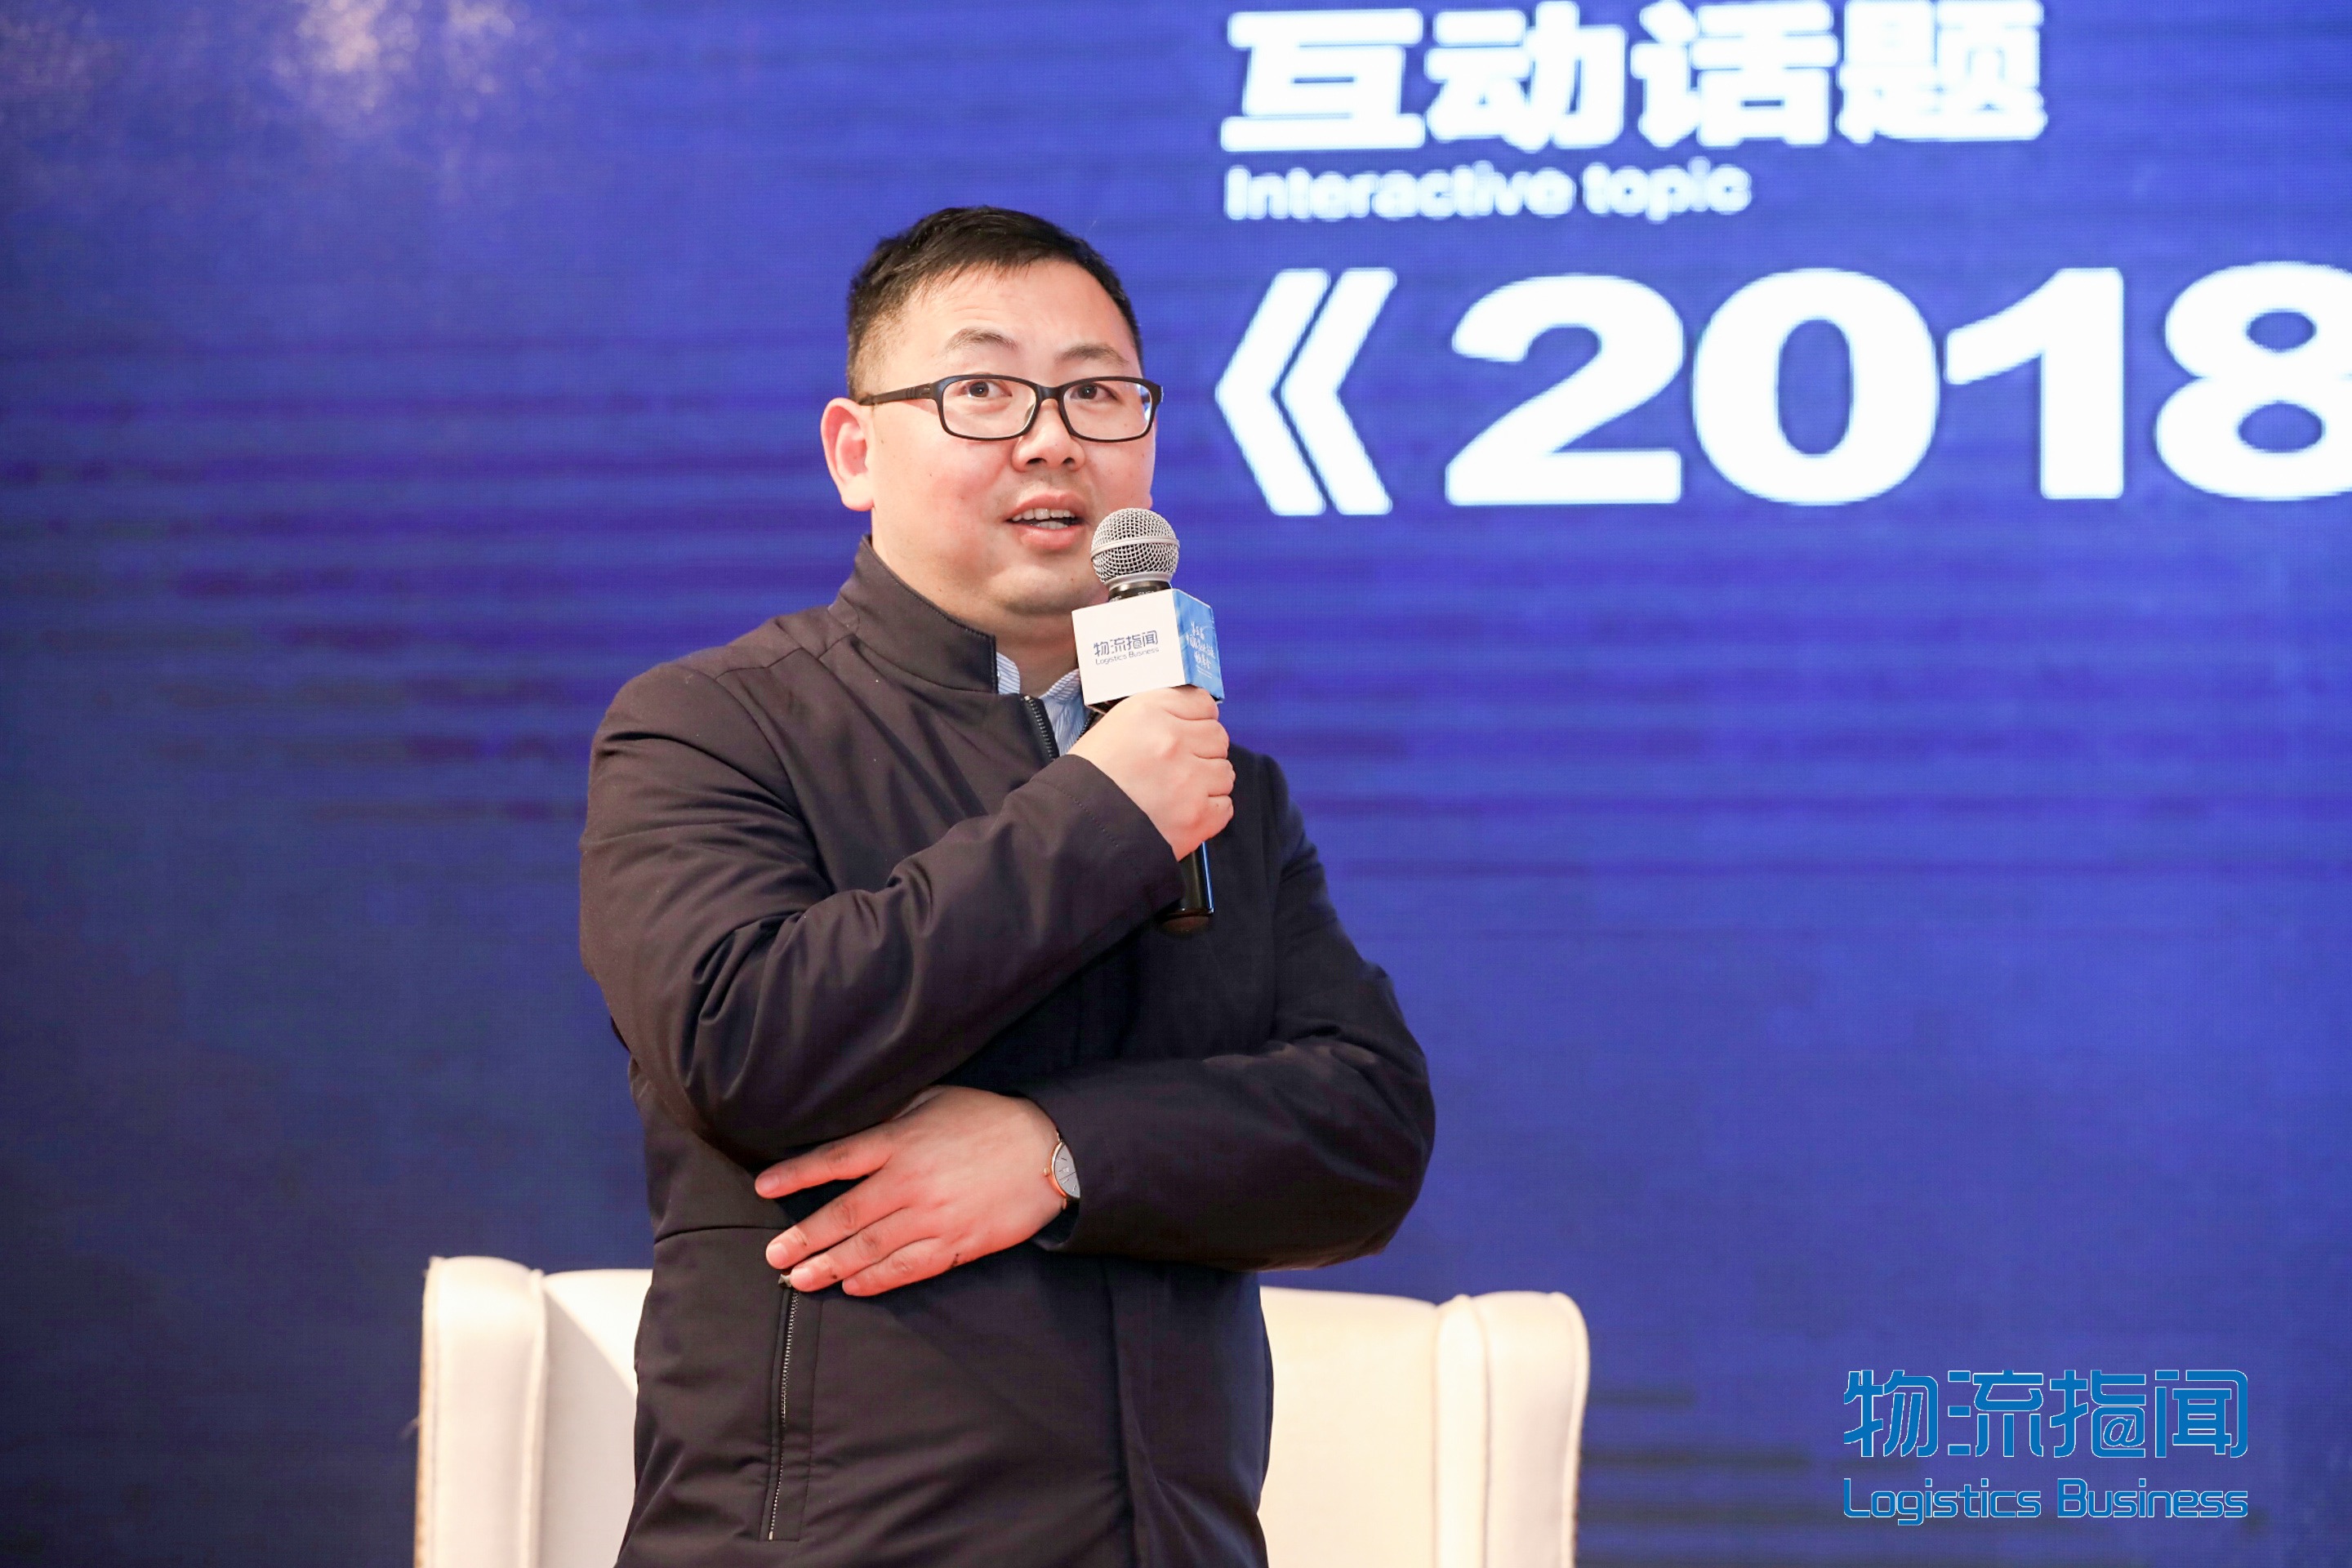 新闻 | 宝开执行总裁 张振林受邀出席第五届中国服装供应链创新峰会